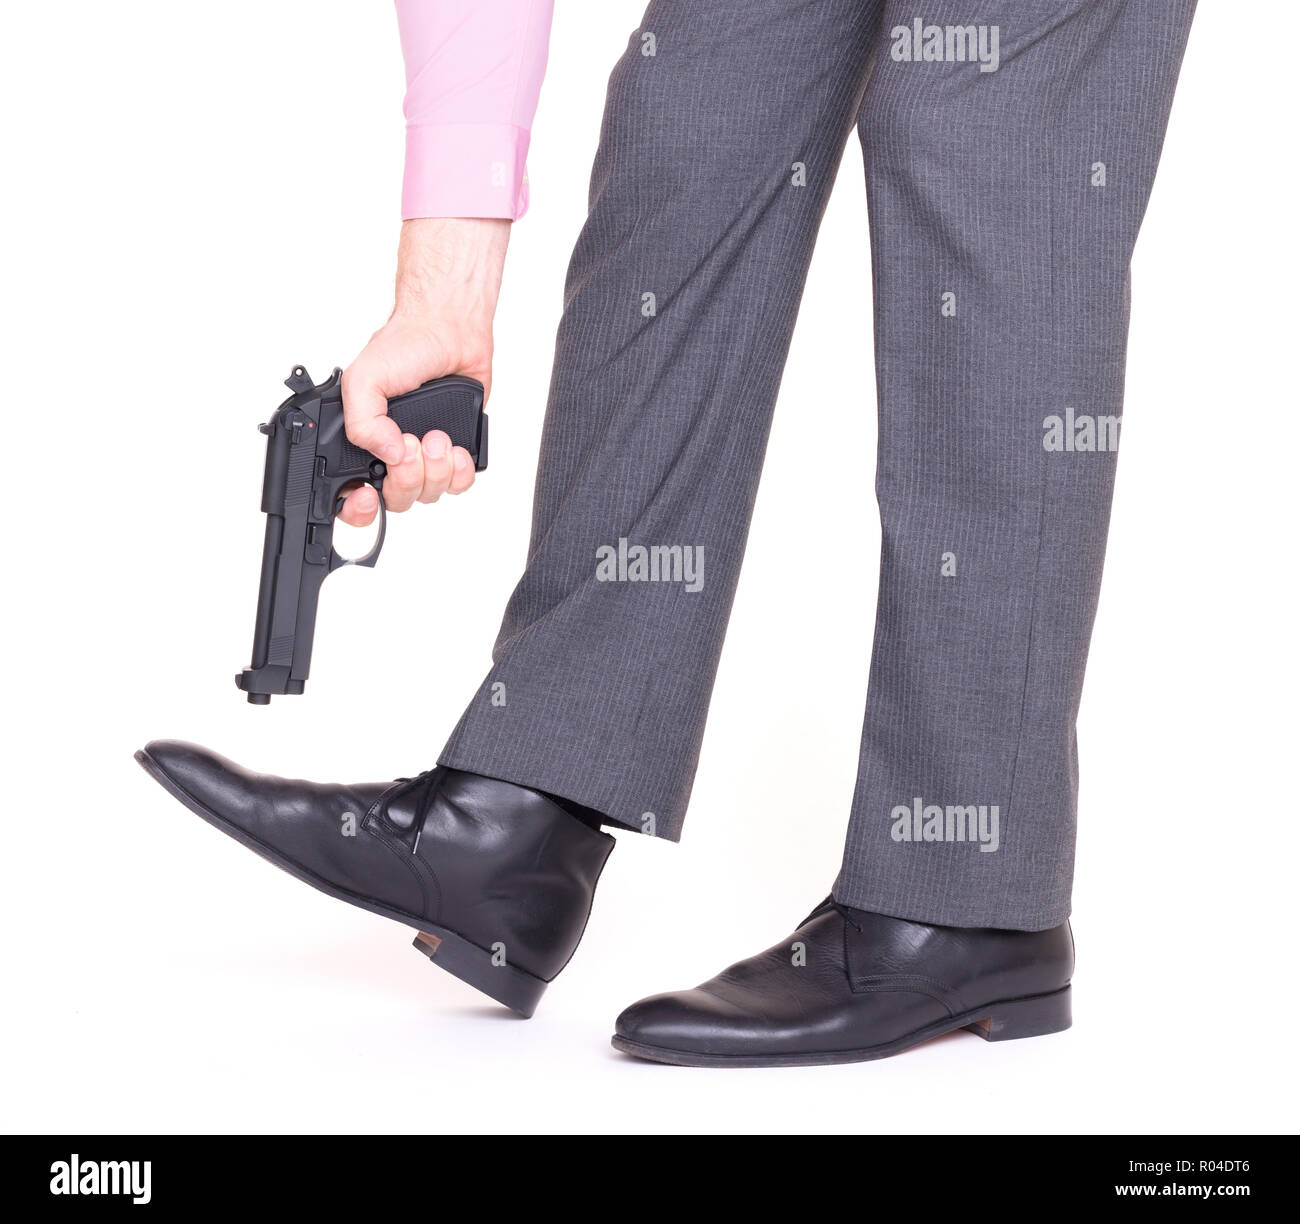 Concept d'affaires - tir une balle dans le pied avec un revolver Banque D'Images